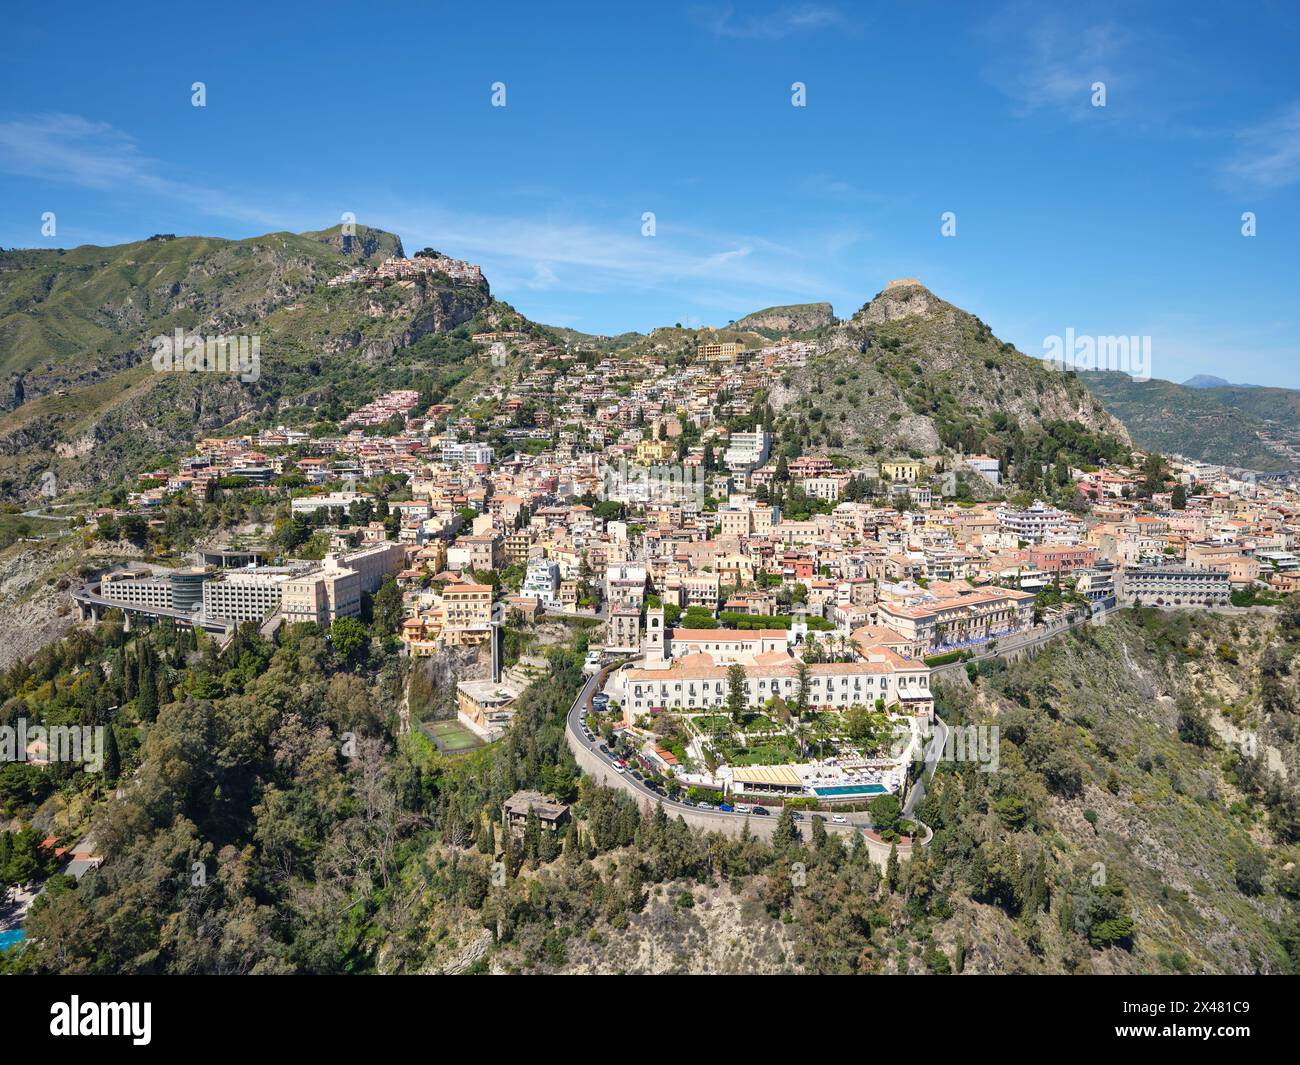 LUFTAUFNAHME. Die touristische Stadt Taormina und oben links das Dorf Castelmola auf einem Hügel. Metropolitanstadt Mesina, Sizilien, Italien. Stockfoto